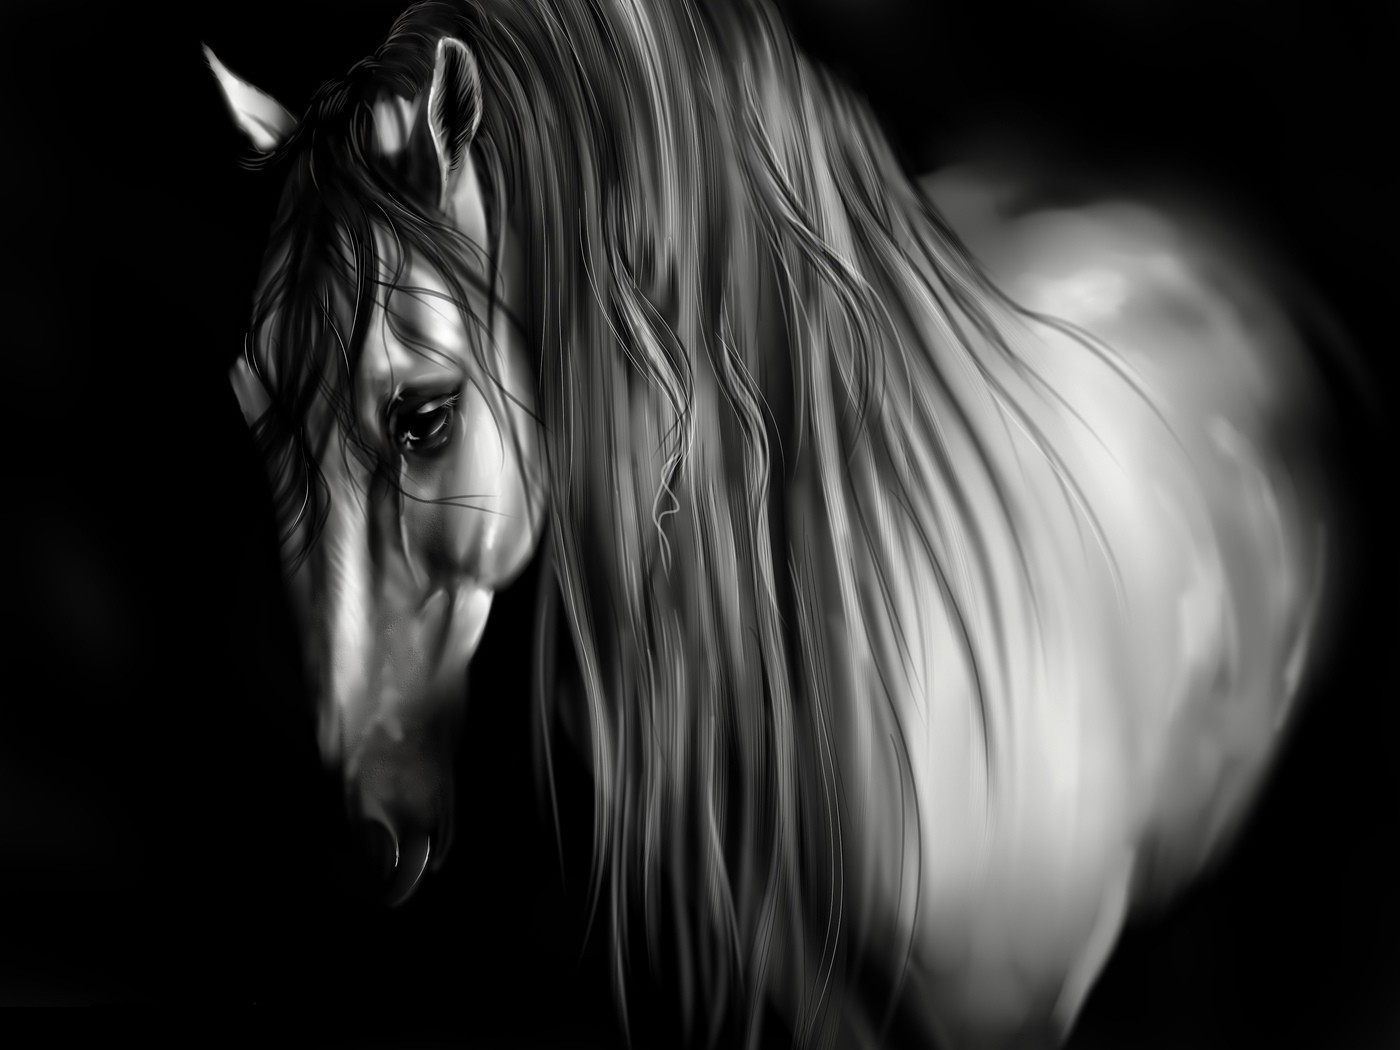 лошади монохромный девушка портрет черный и белый искусство фантазия темный аннотация ню студия красивые модель свет рабочего стола лицо глаз мода дым